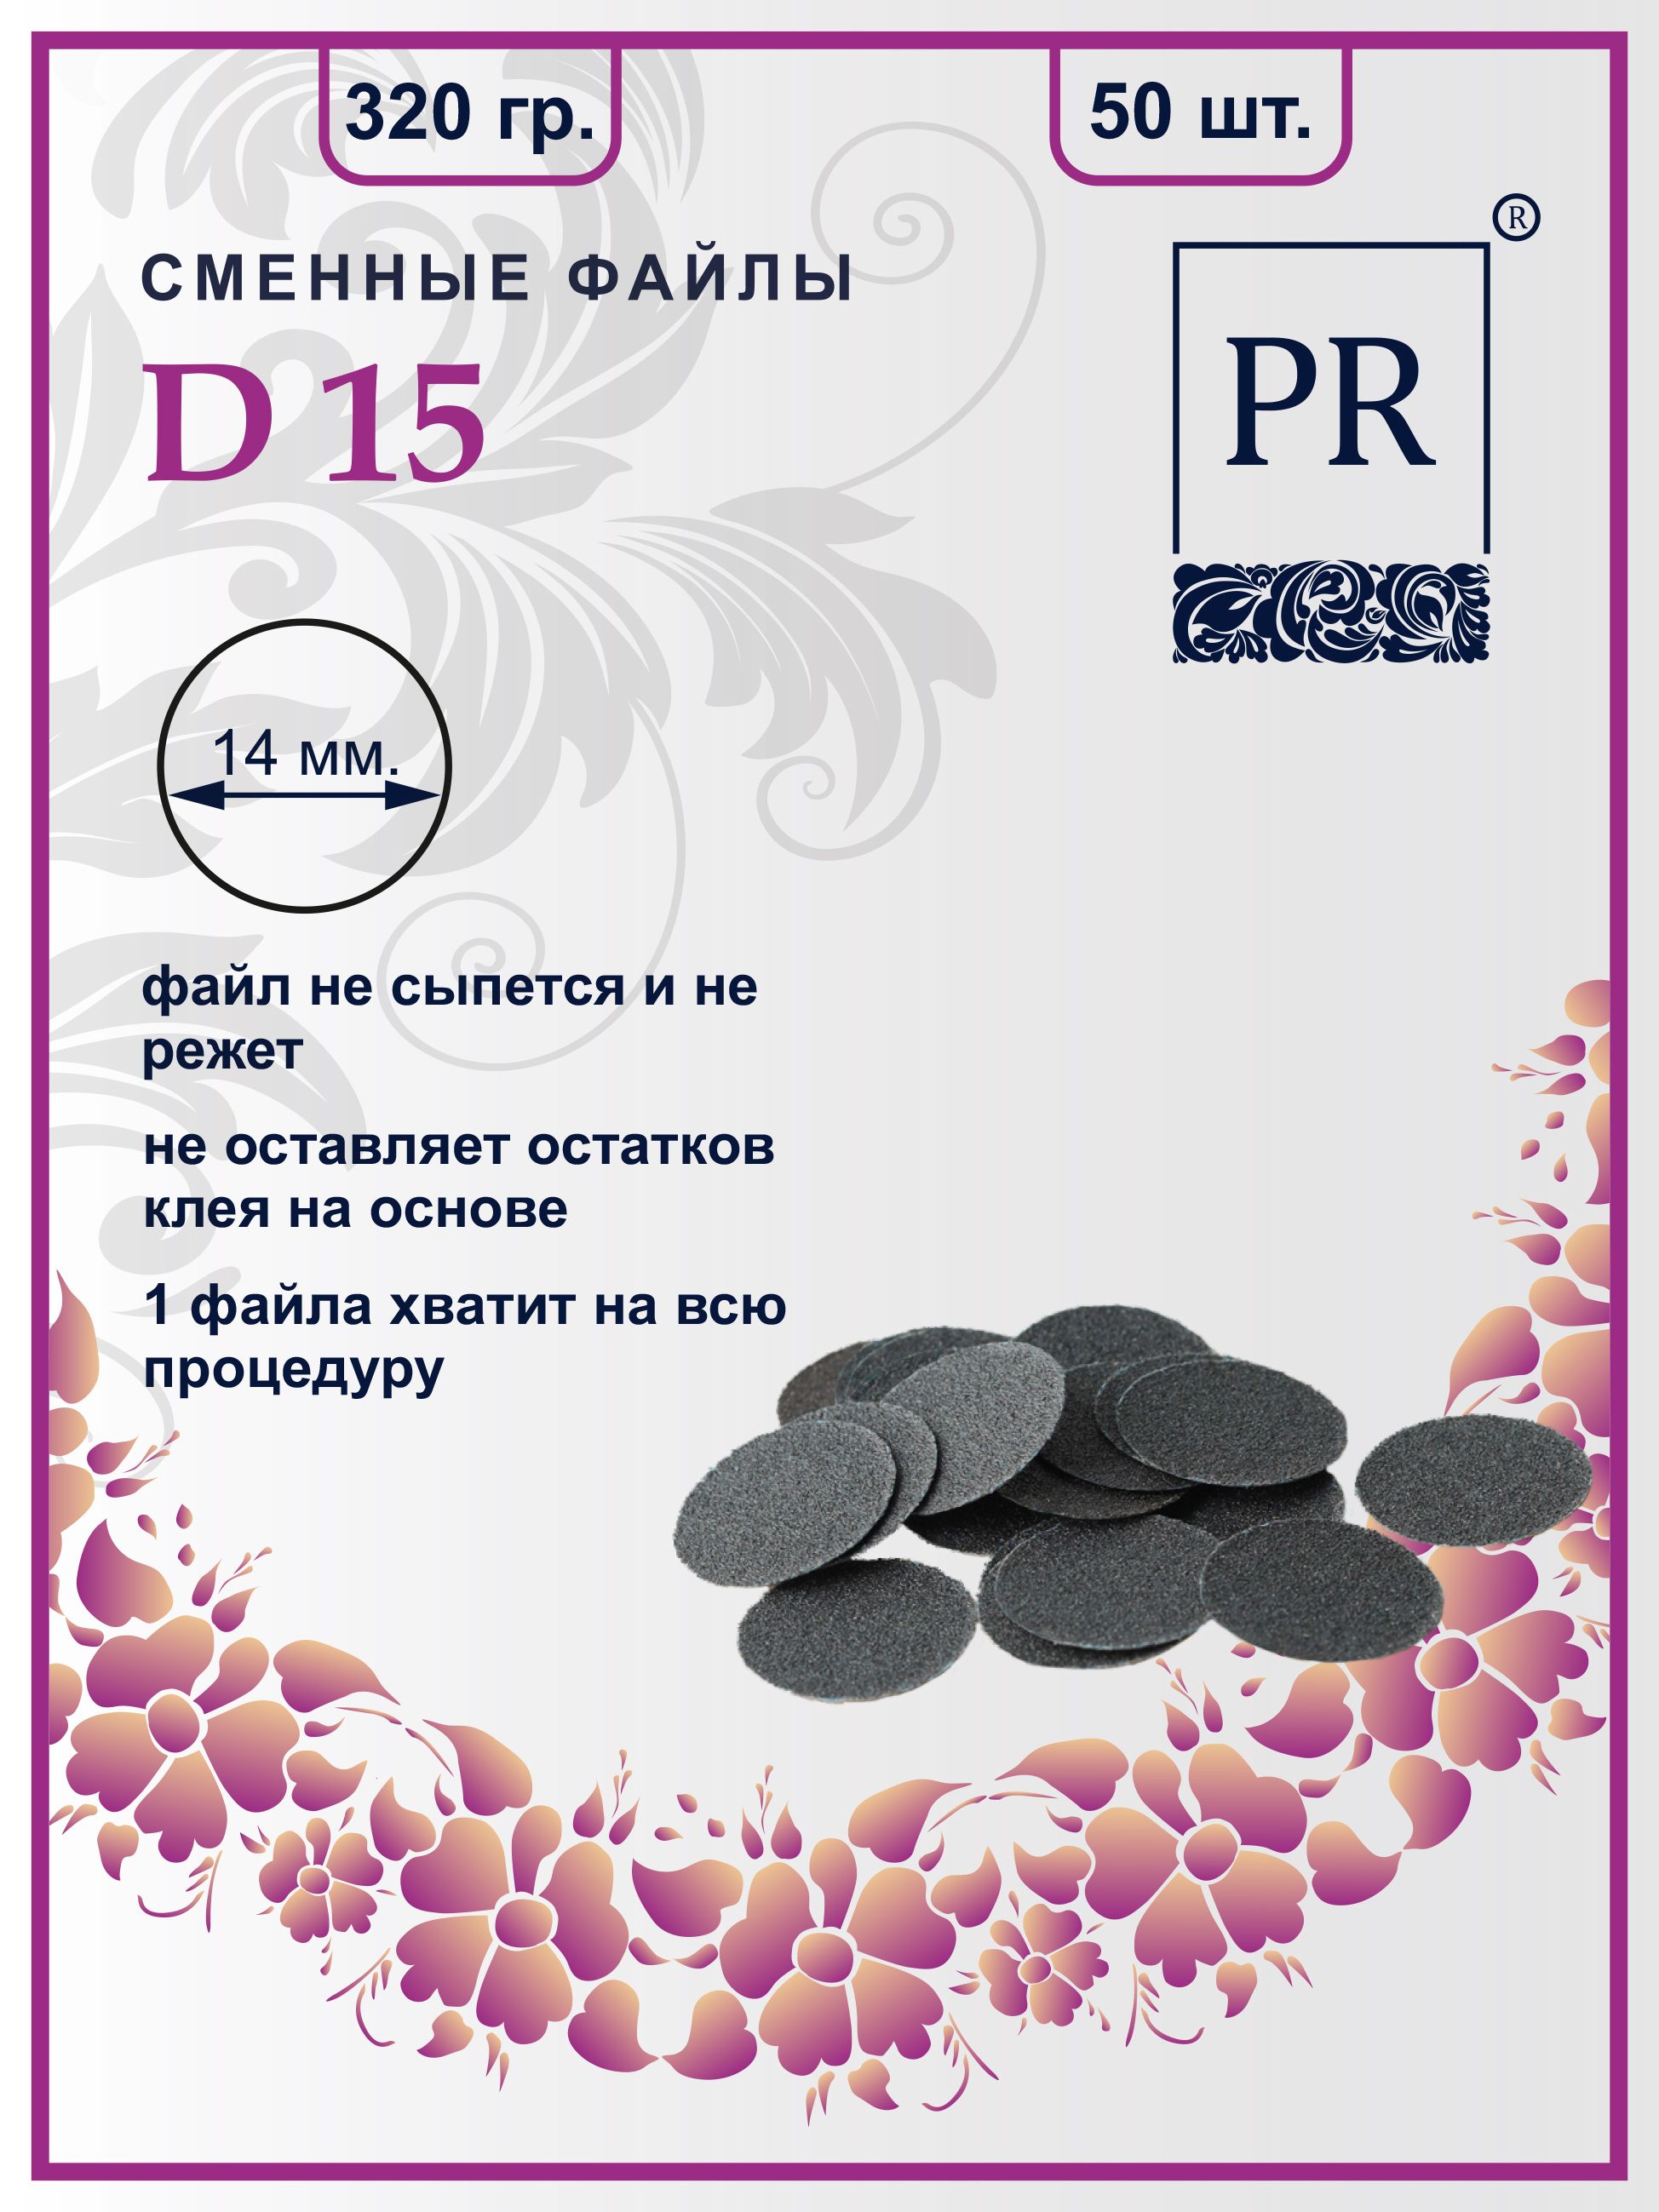 Сменные файлы Pilochki Russia диски для педикюра для диска S 320 грит 50 штук staleks сменные файлы papmam для пилки прямой staleks pro expert 22 180 грит 1